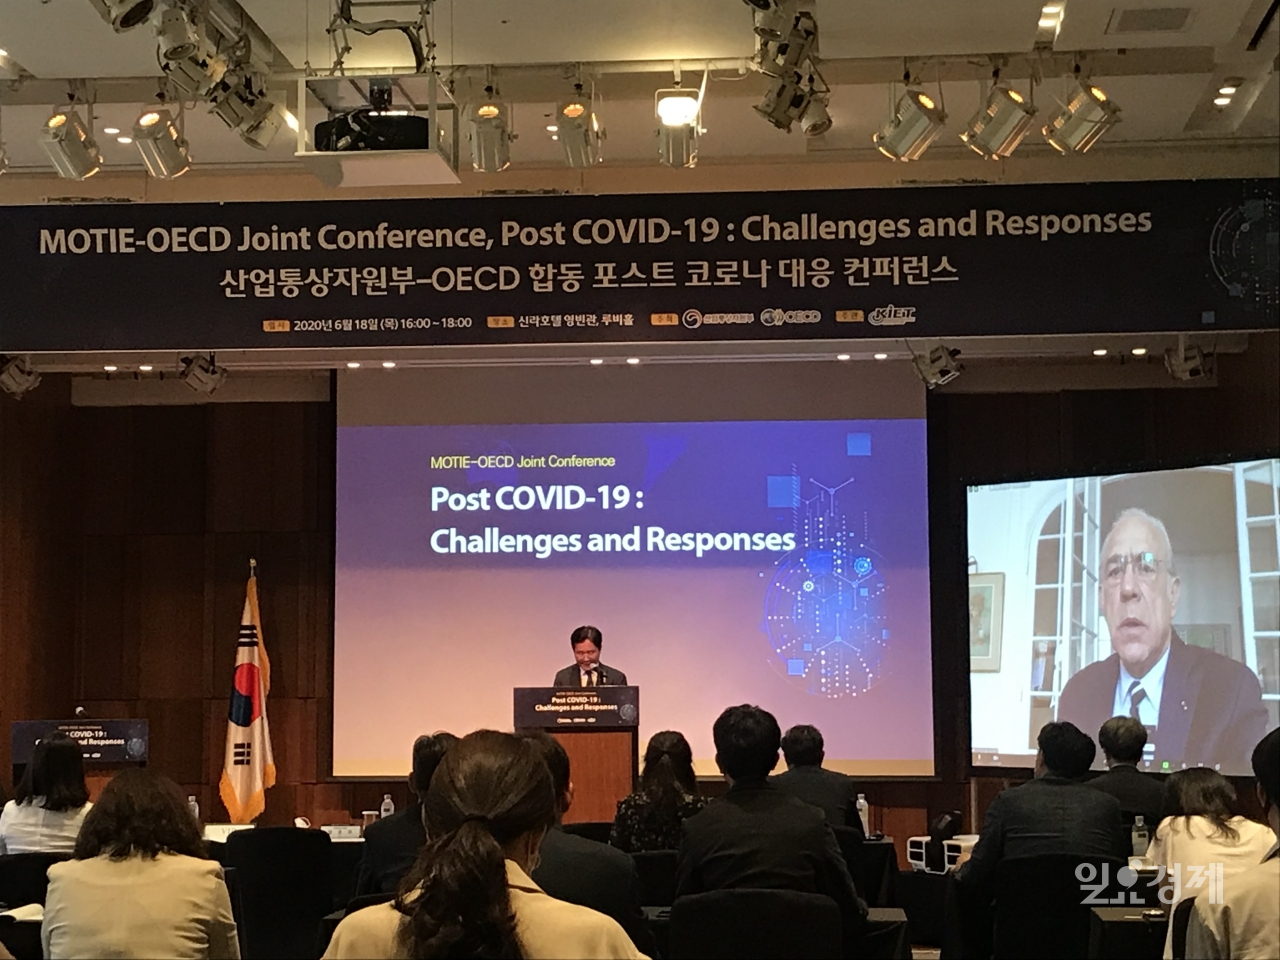 18일 오후 서울 중구 신라호텔에서 열린 '산업통상자원부-OECD 합동 포스트 코로나 대응 컨퍼런스'에서 성윤모 산업통상자원부 장관이 발언하고 있다.